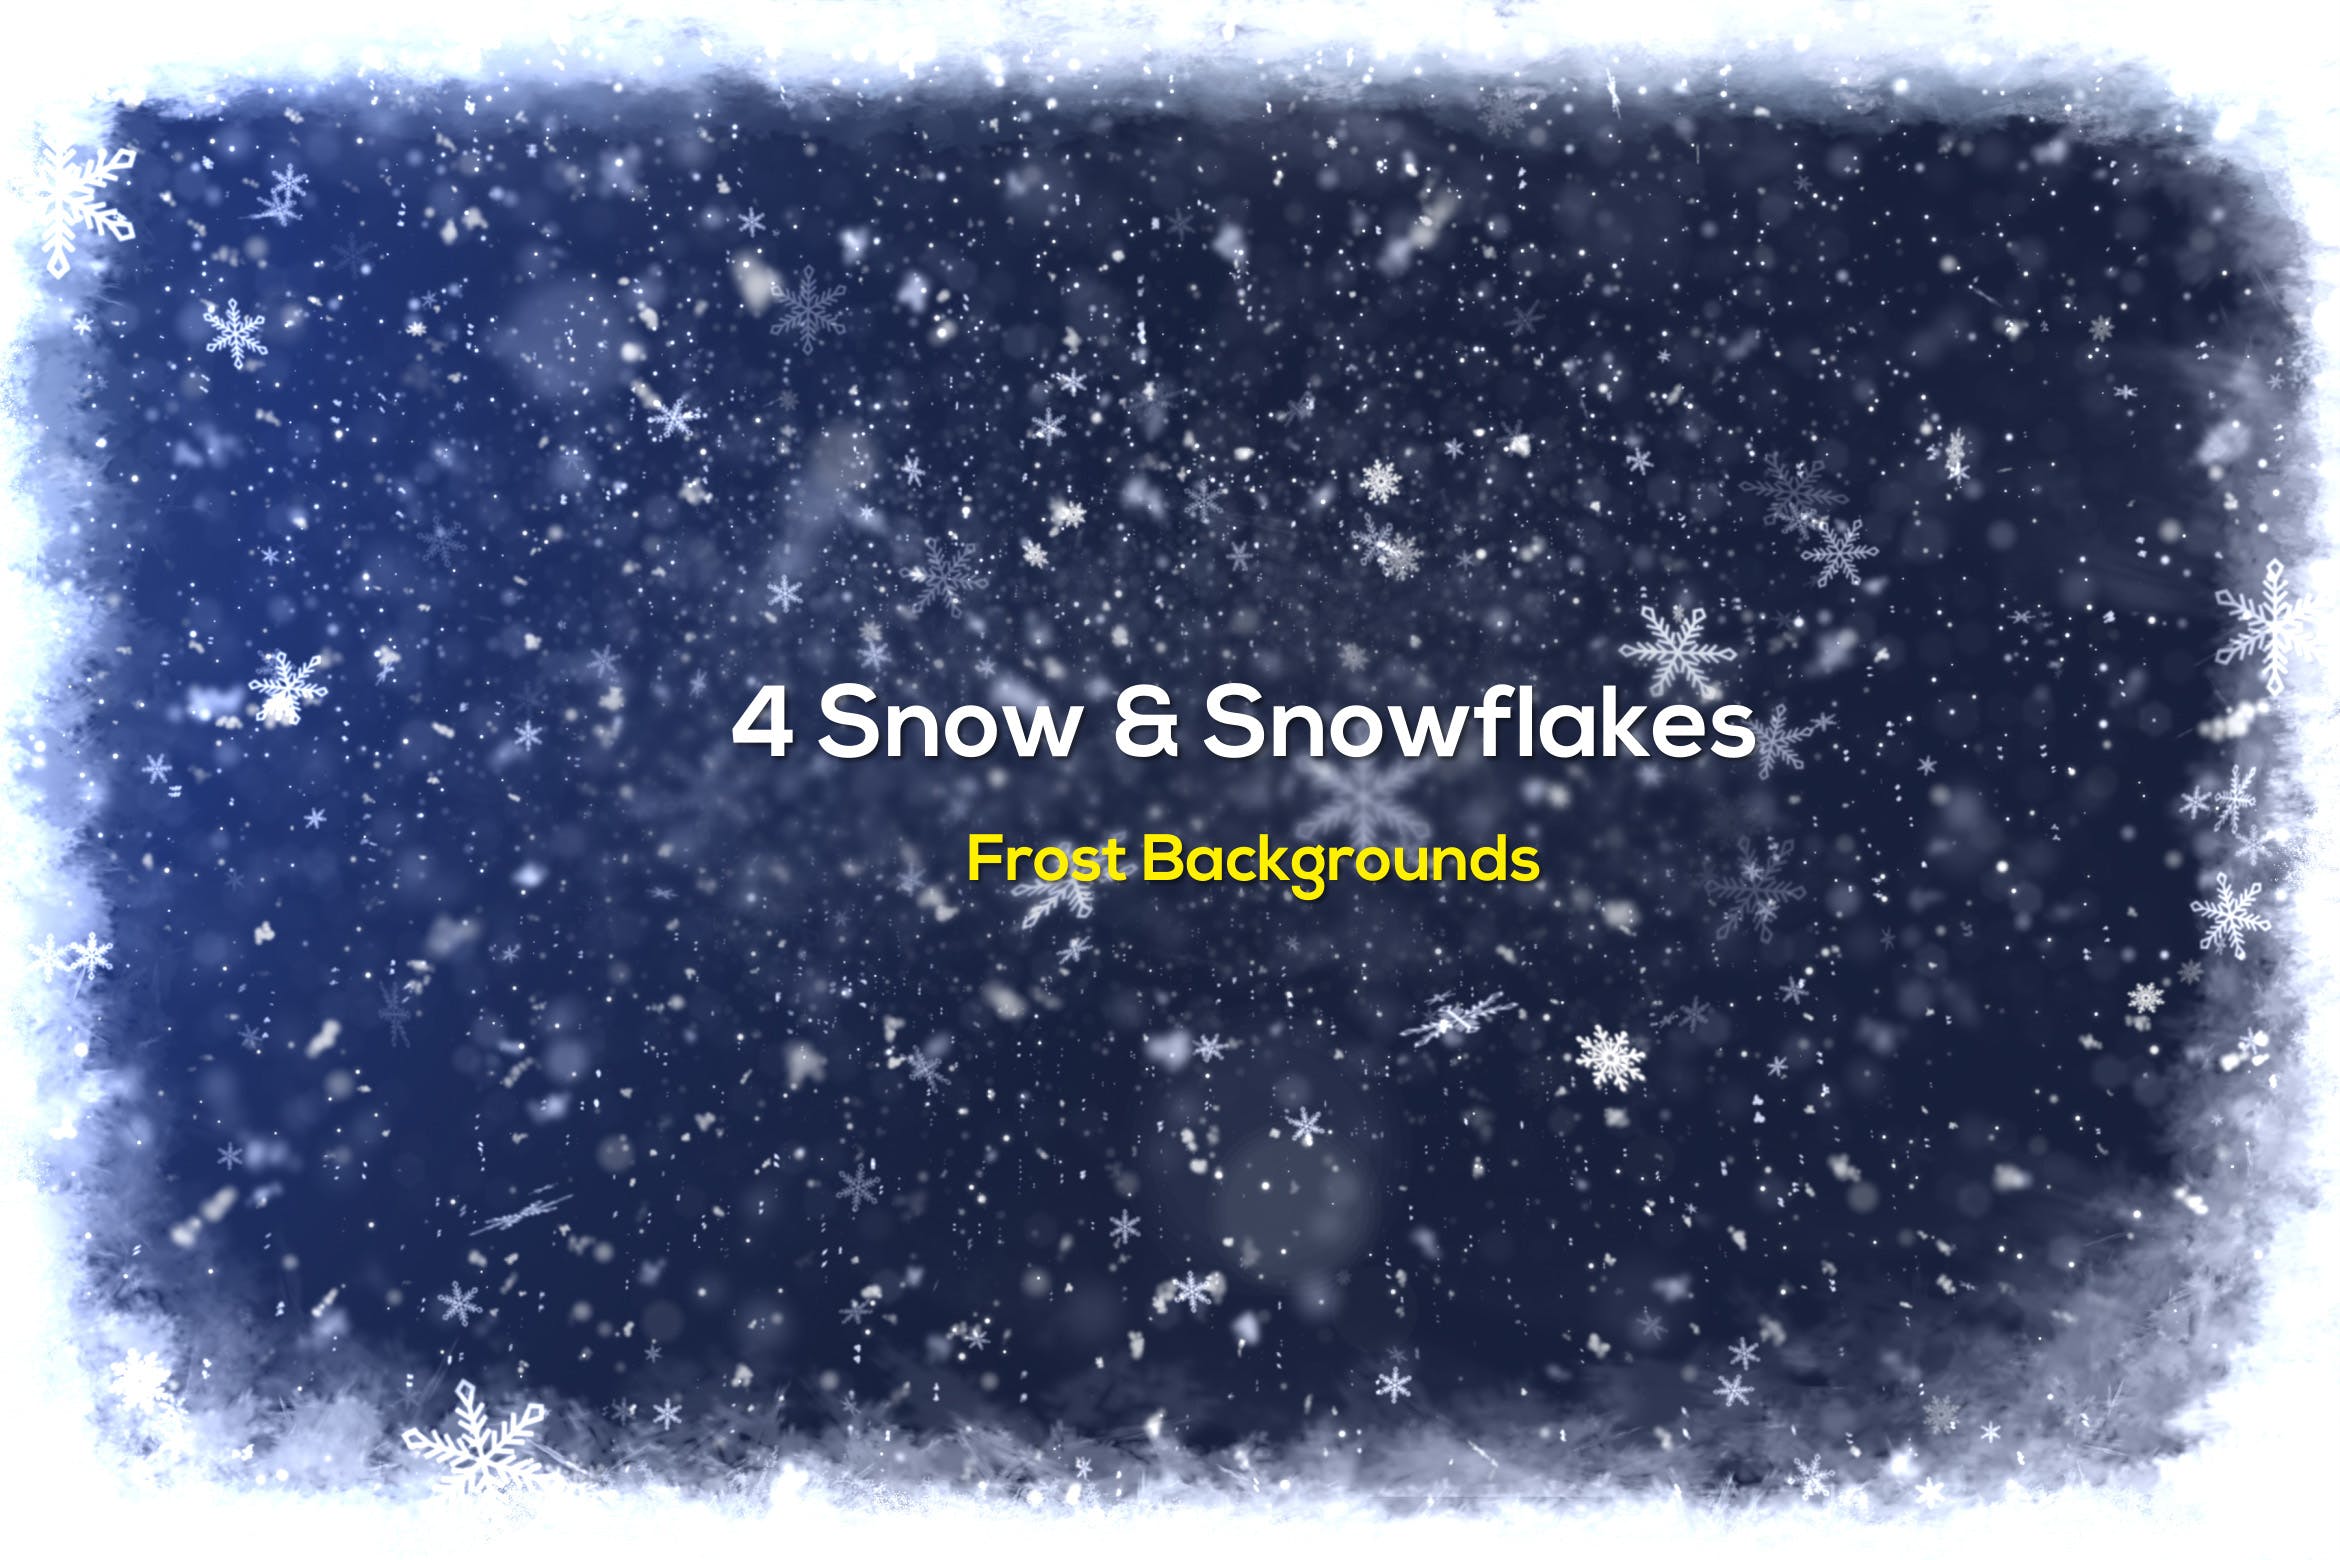 雪花纷飞冰霜漫天圣诞节高清背景图素材 Snow Frost Backgrounds插图